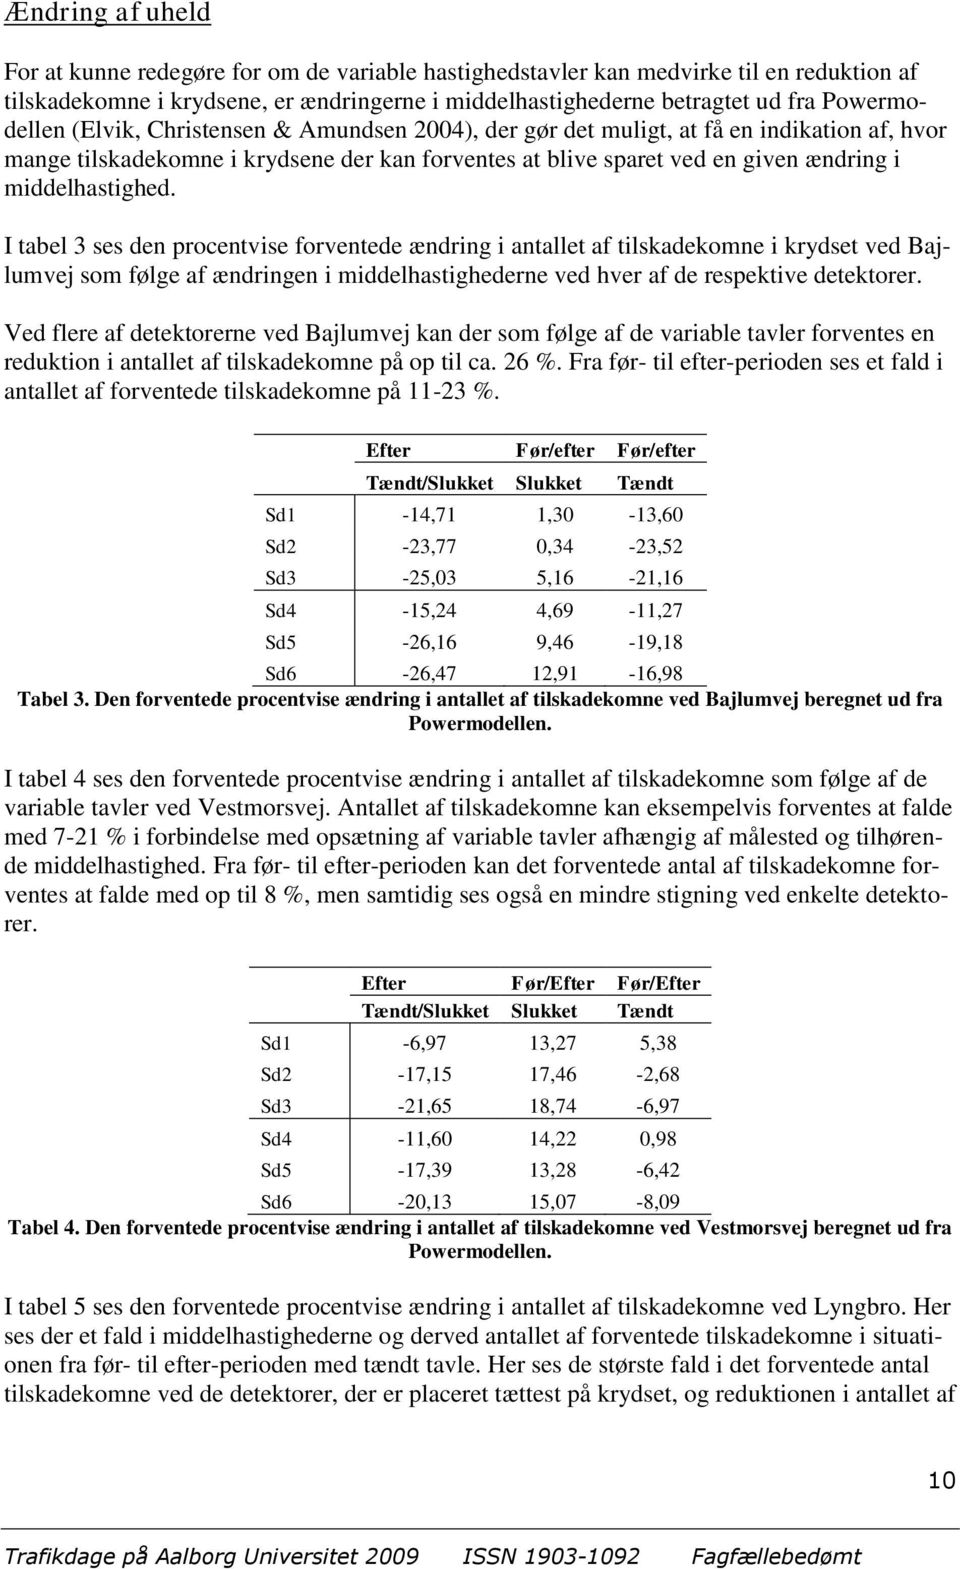 middelhastighed. I tabel 3 ses den procentvise forventede ændring i antallet af tilskadekomne i krydset ved Bajlumvej som følge af ændringen i middelhastighederne ved hver af de respektive detektorer.